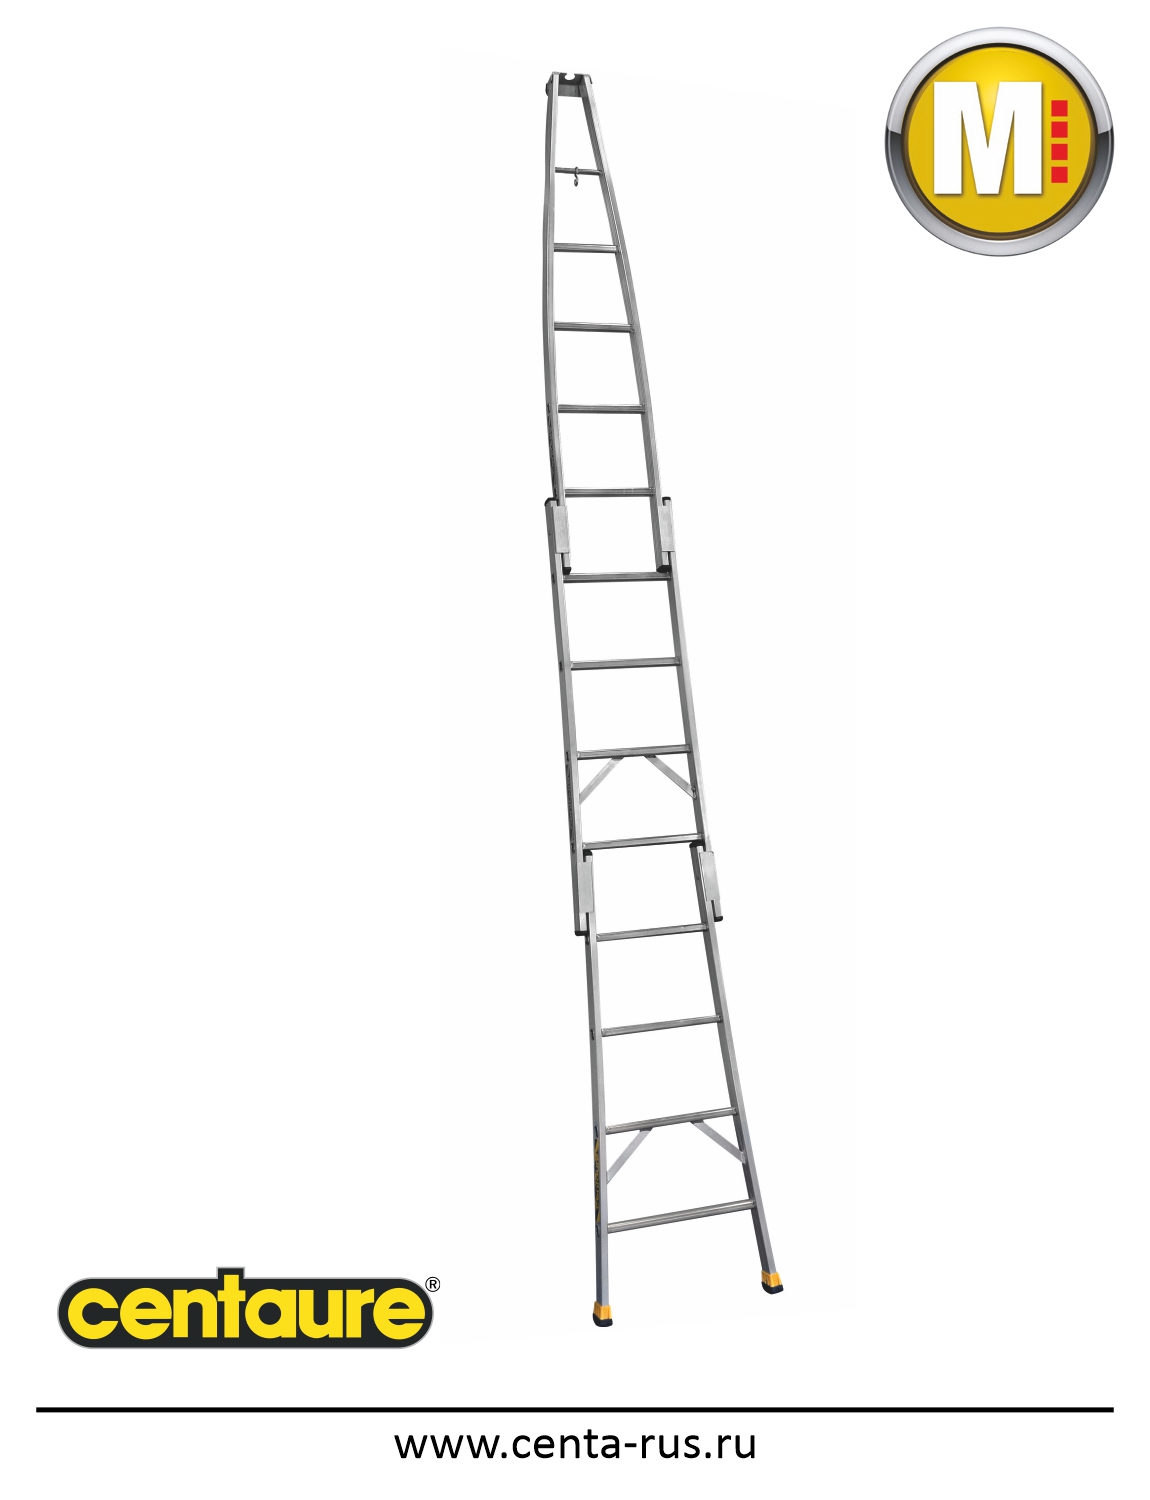 Алюминиевая лестница Centaure N для мойщиков окон 415112